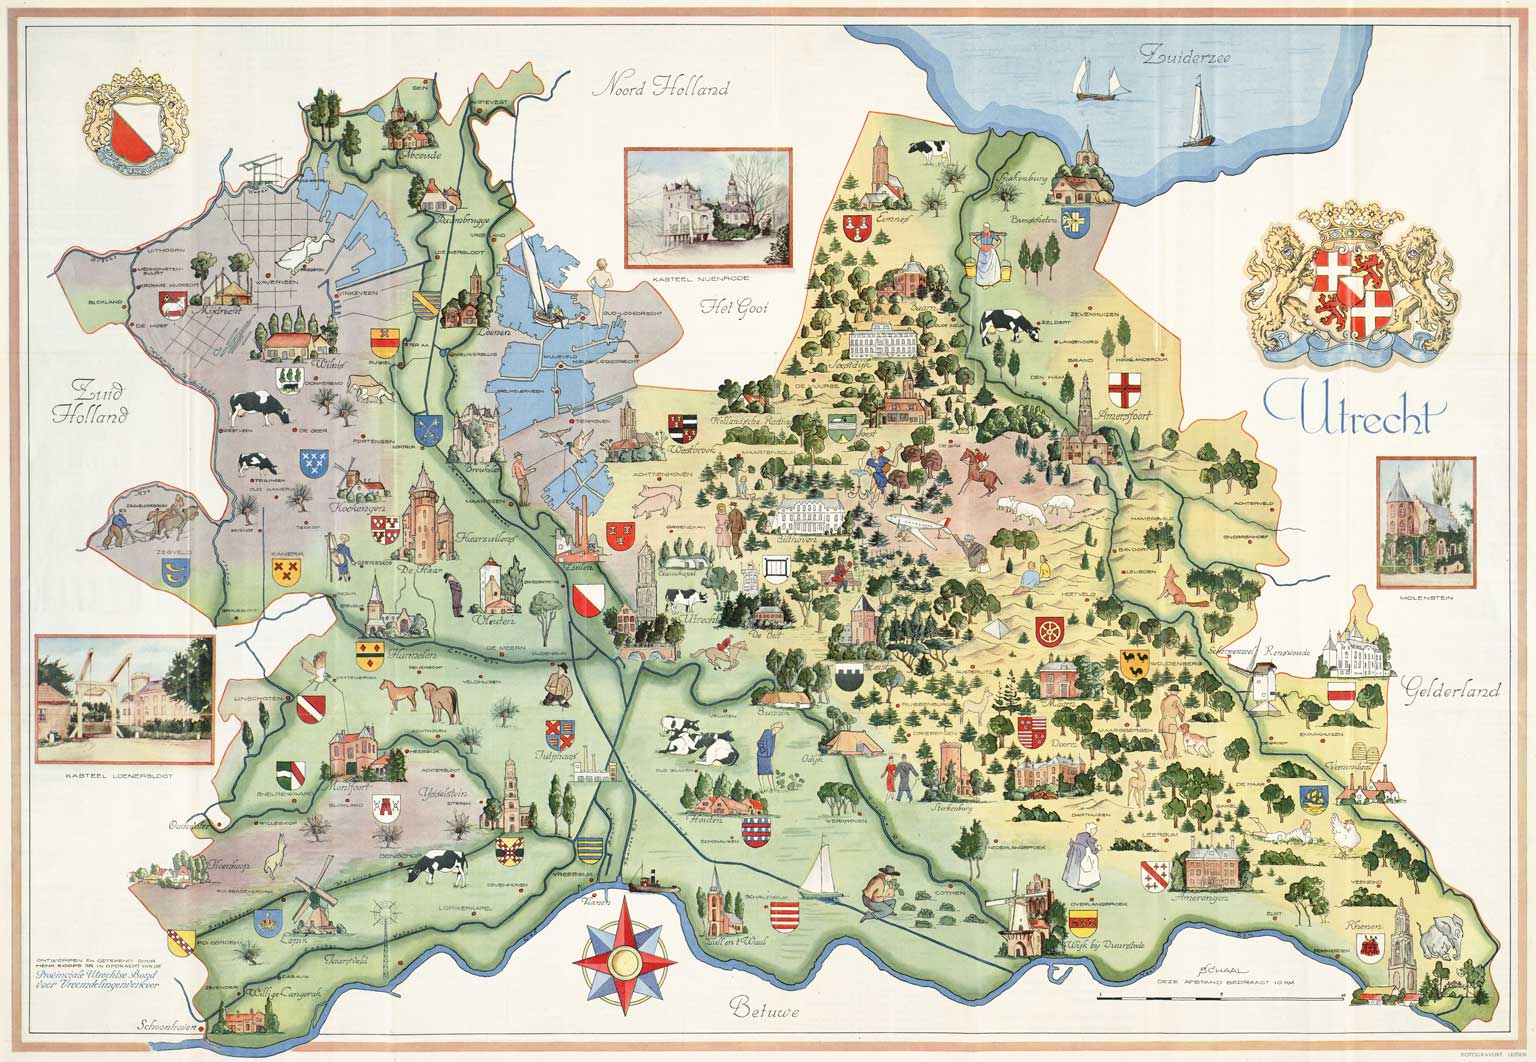 Toeristenkaart van Utrecht door Henk Koops, 1950  (Flehite/Archief Eemland)